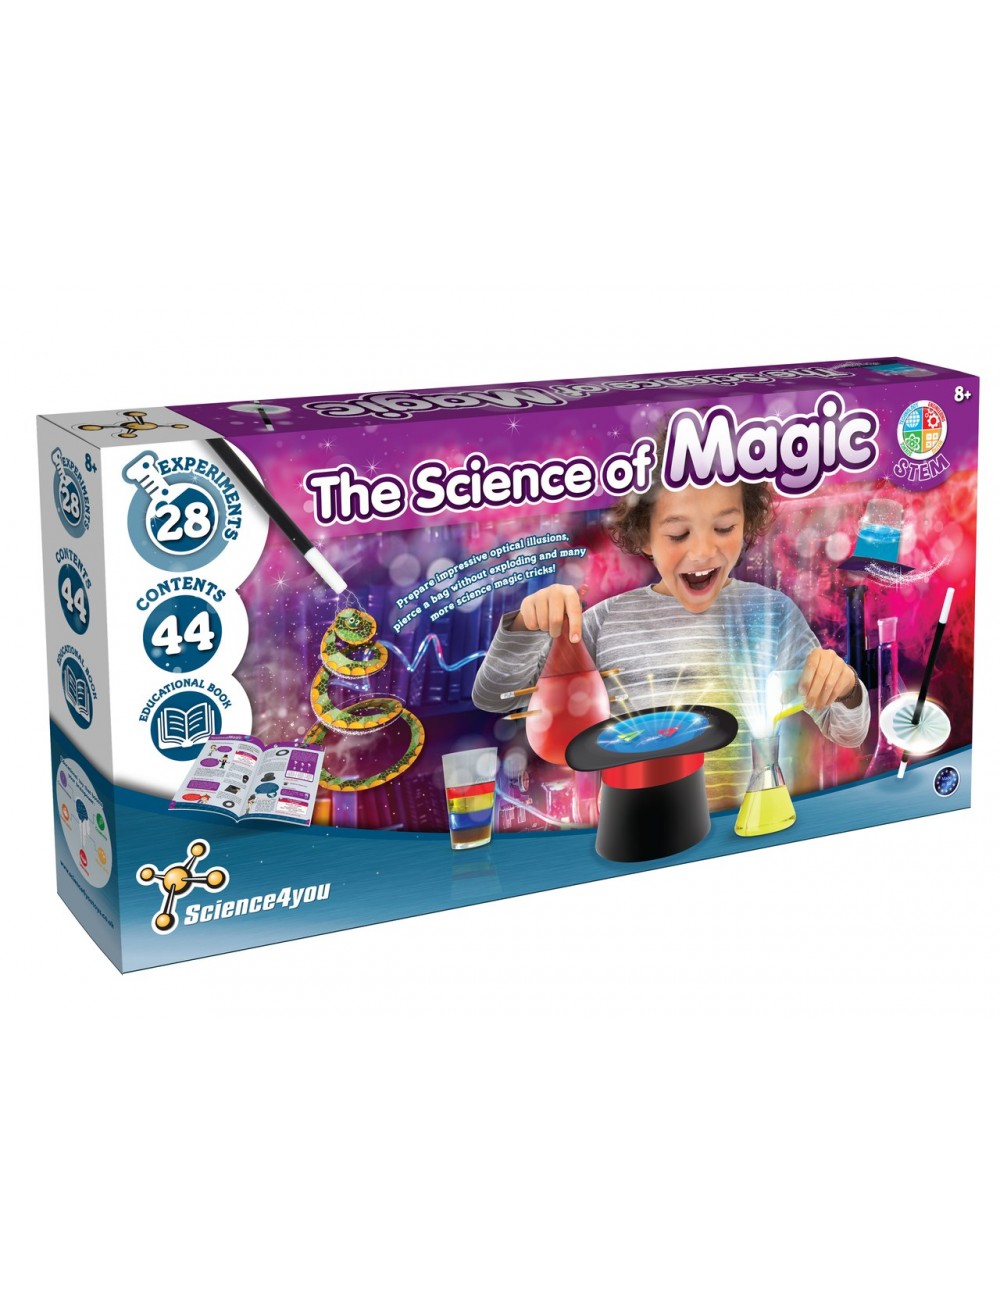 Science4you Potions Magiques - Utilisez le Chaudron Magique et